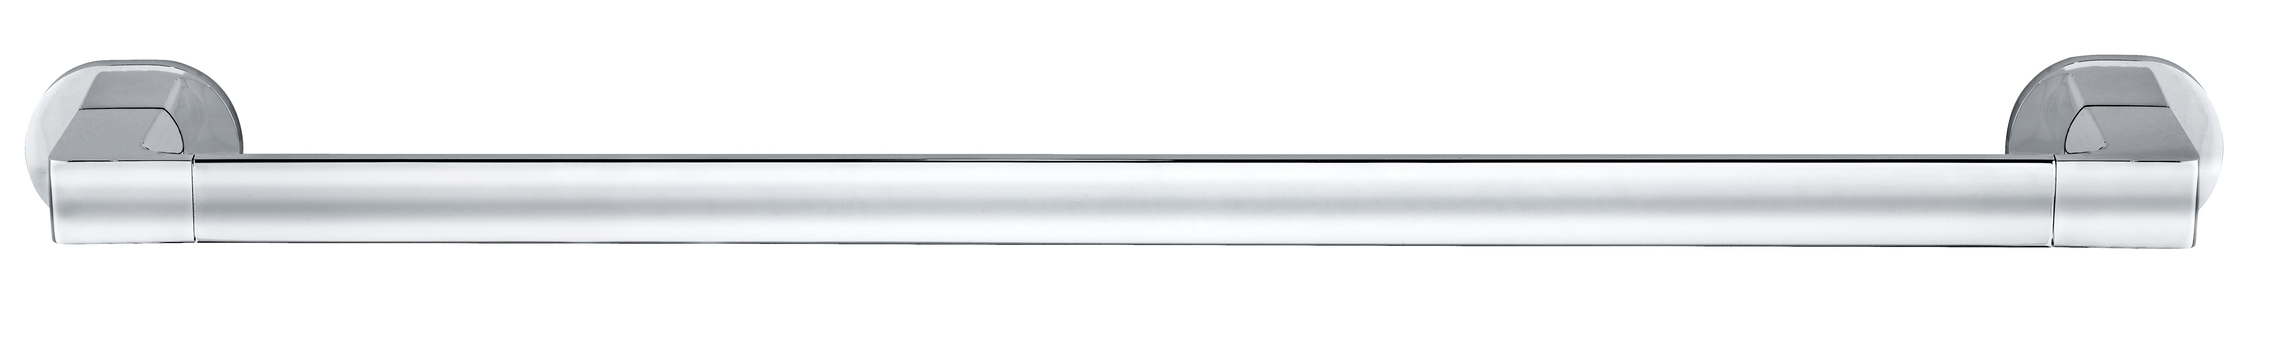 Wenko UV-Loc® Badetuchstange Uno Maribor 63 x 5 x 7,5 cm, silber glänzend. Befestigen  ohne Bohren | Uno | 63 x 5 x 7,5 cm | 422579